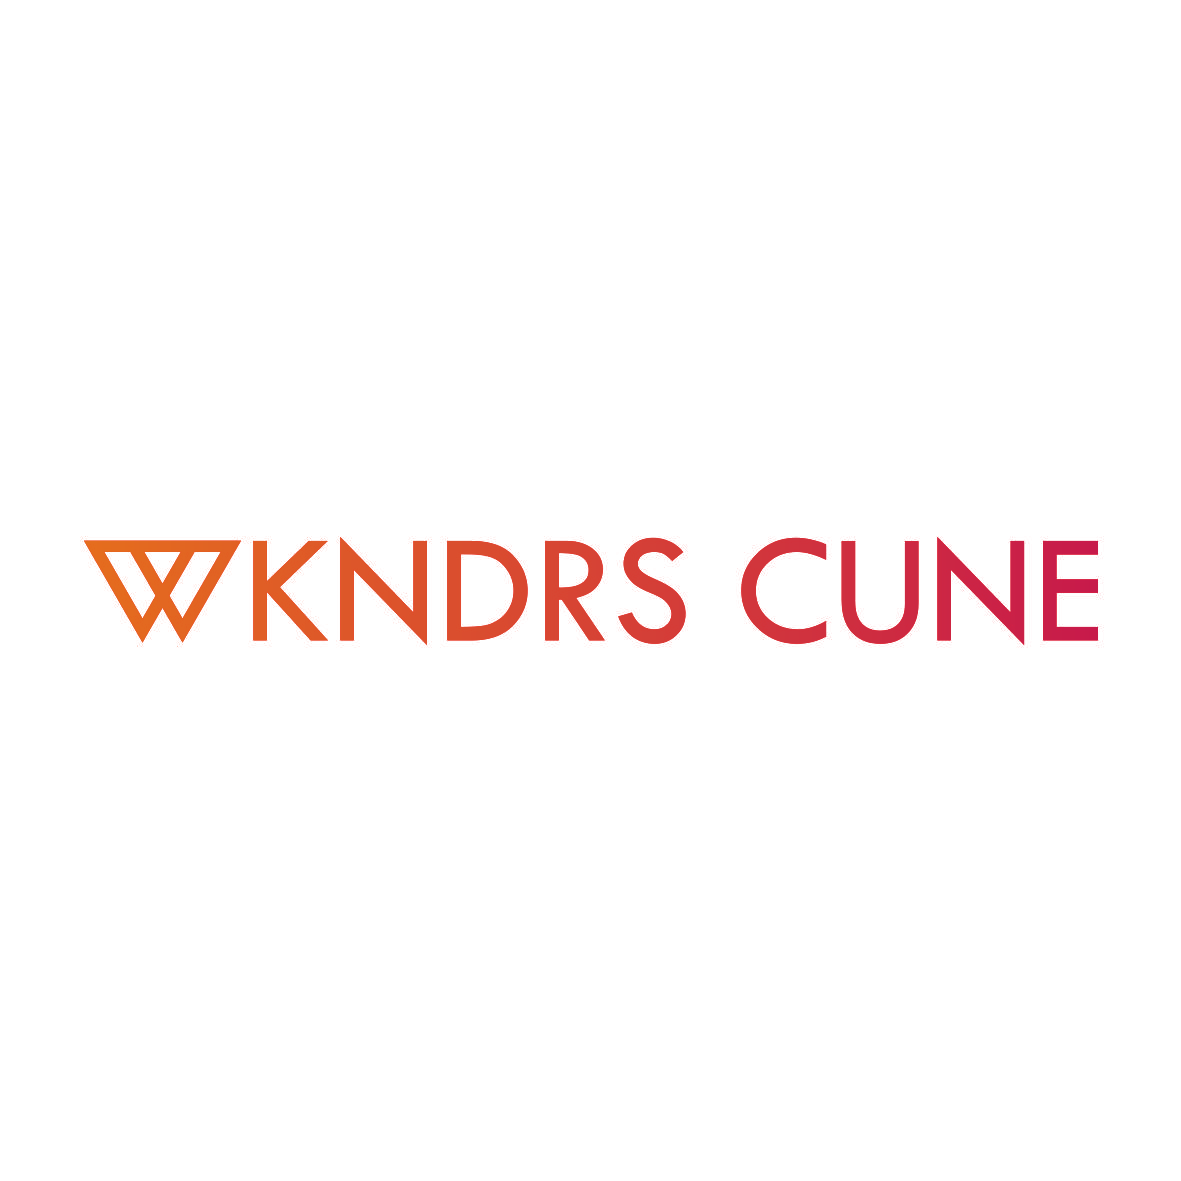 WKNDRS CUNE